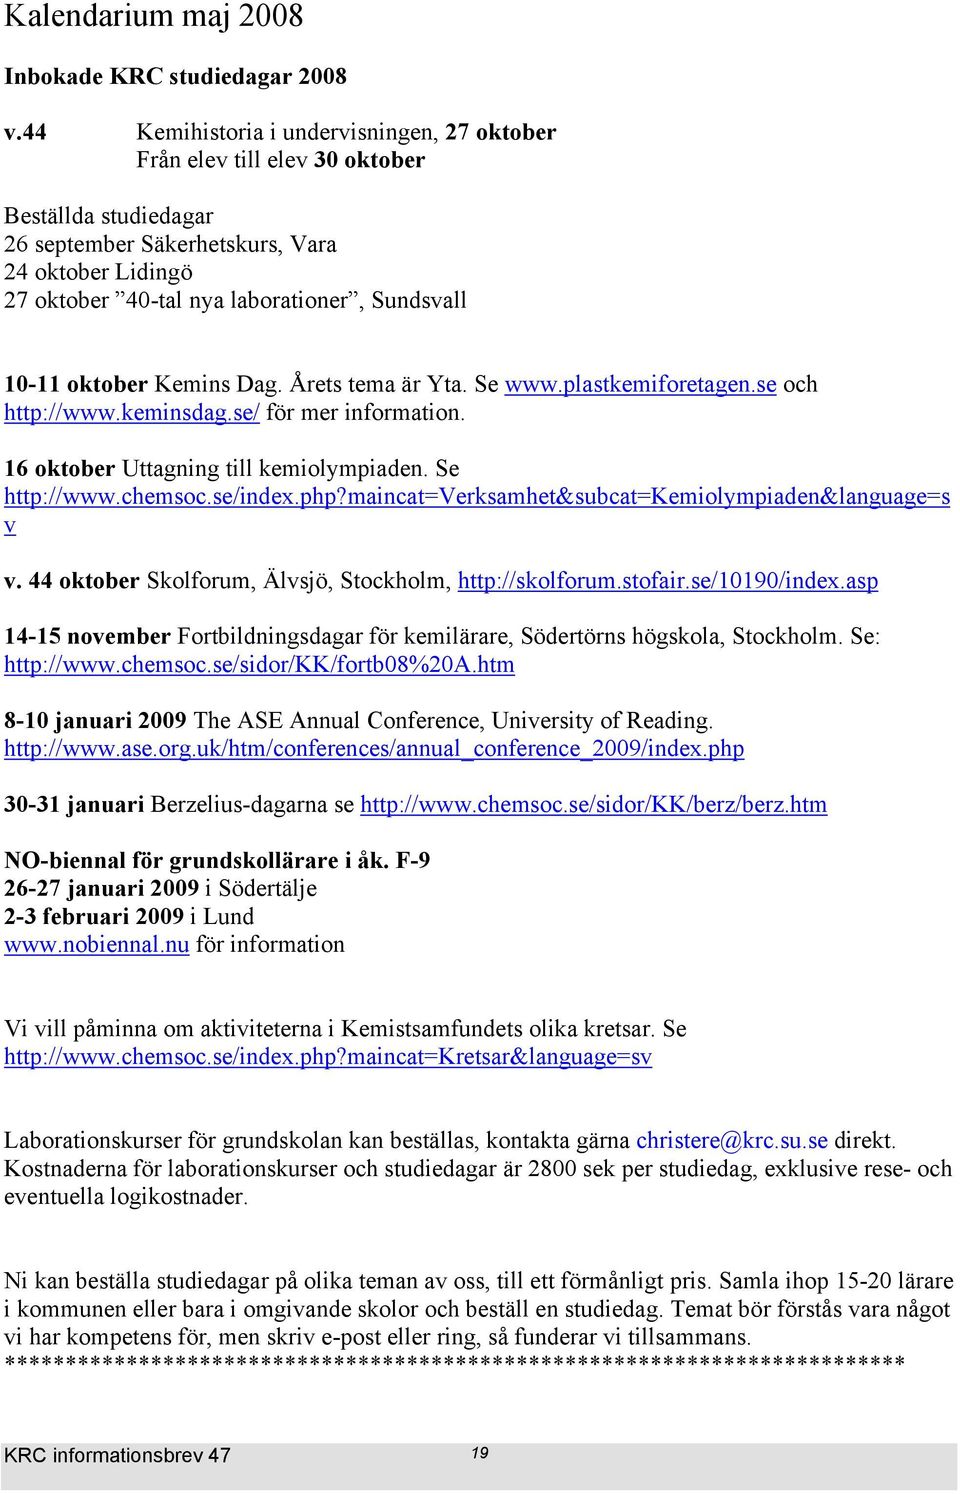 10-11 oktober Kemins Dag. Årets tema är Yta. Se www.plastkemiforetagen.se och http://www.keminsdag.se/ för mer information. 16 oktober Uttagning till kemiolympiaden. Se http://www.chemsoc.se/index.